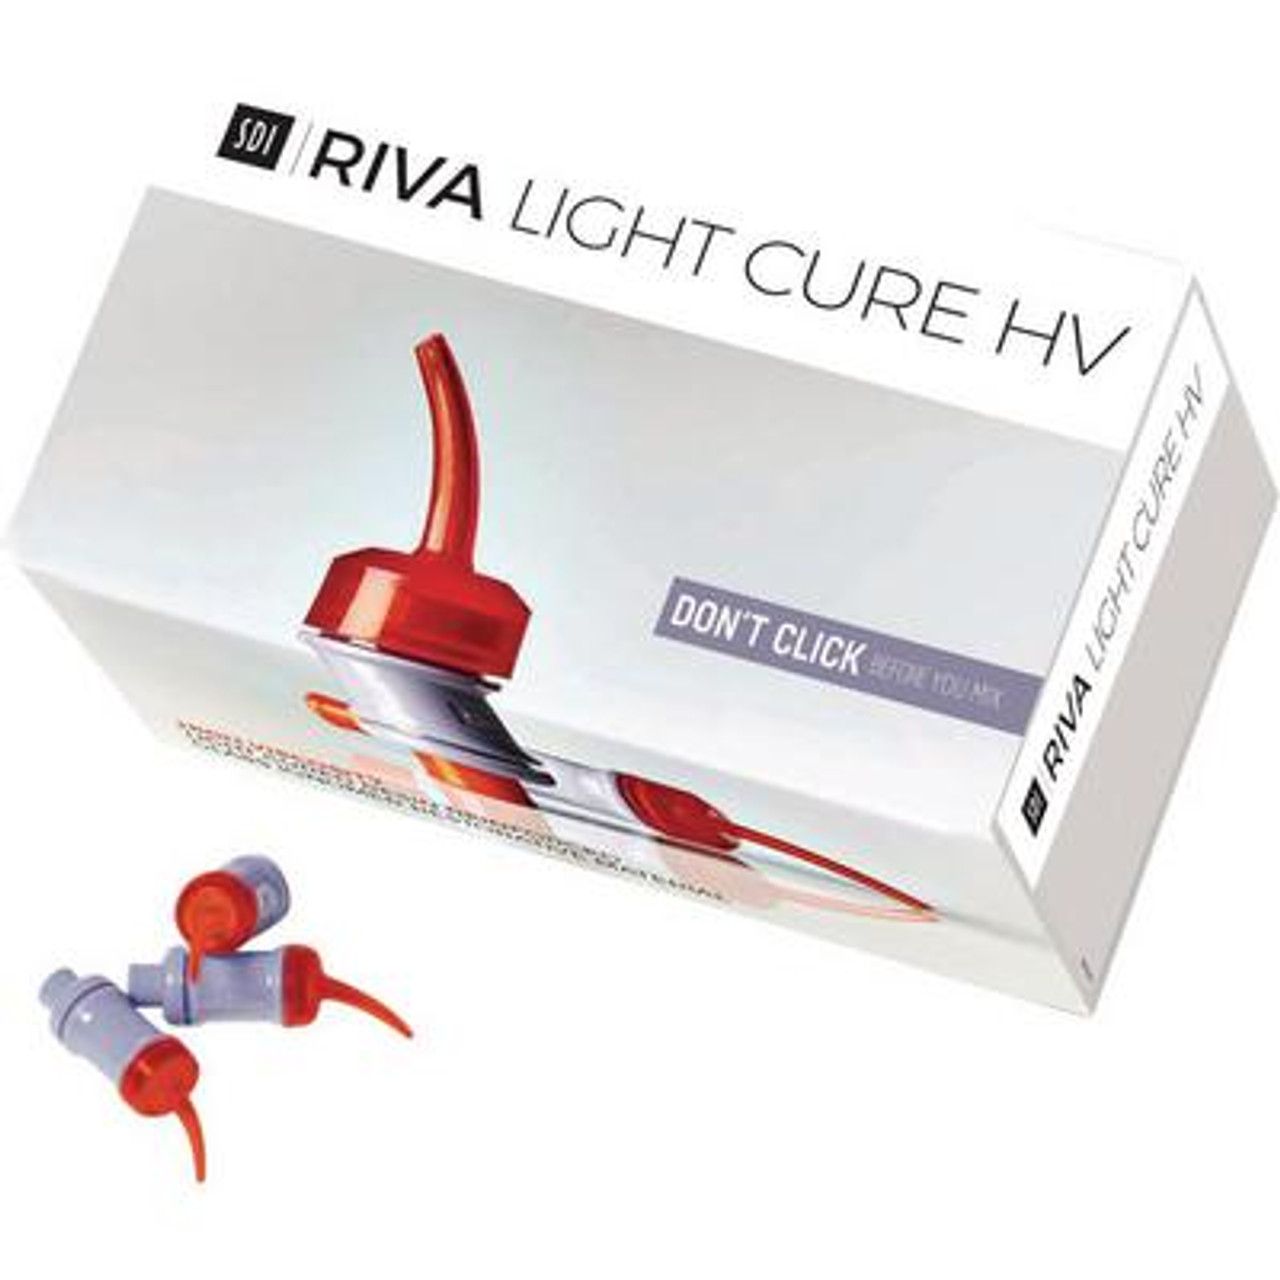 X-CURE Curing Light - Flight Dental System